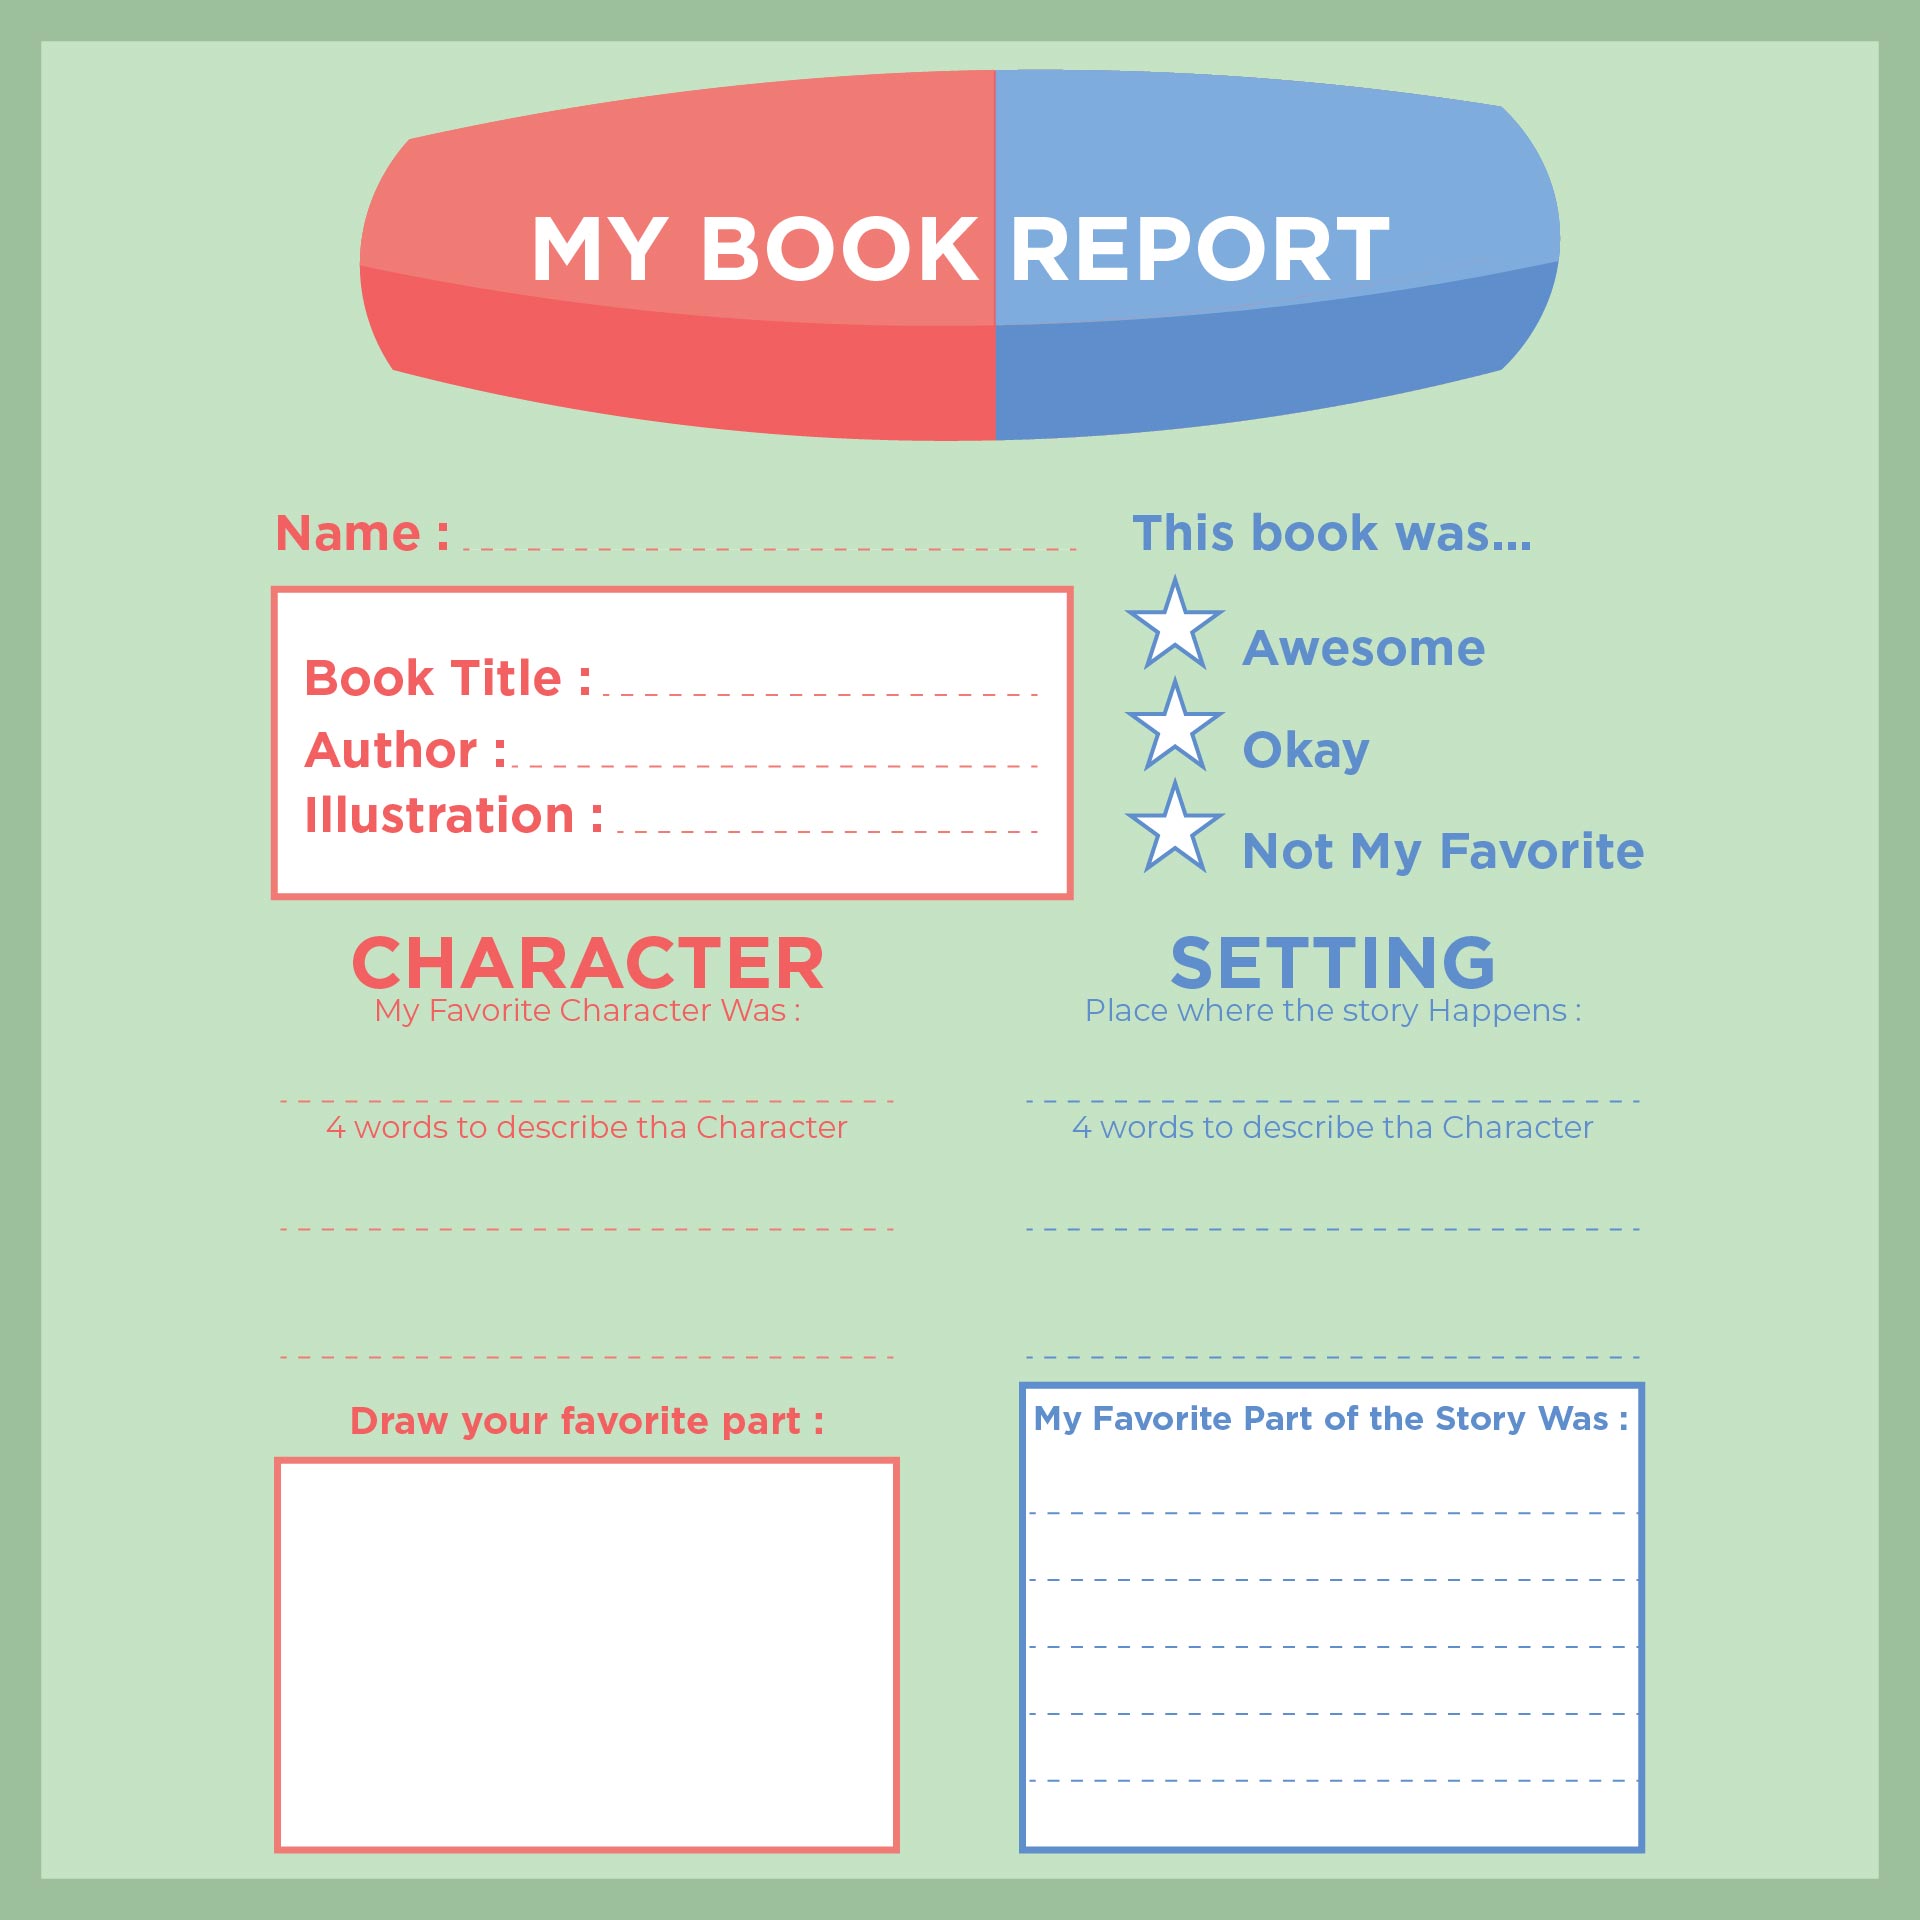 Sample of book report template